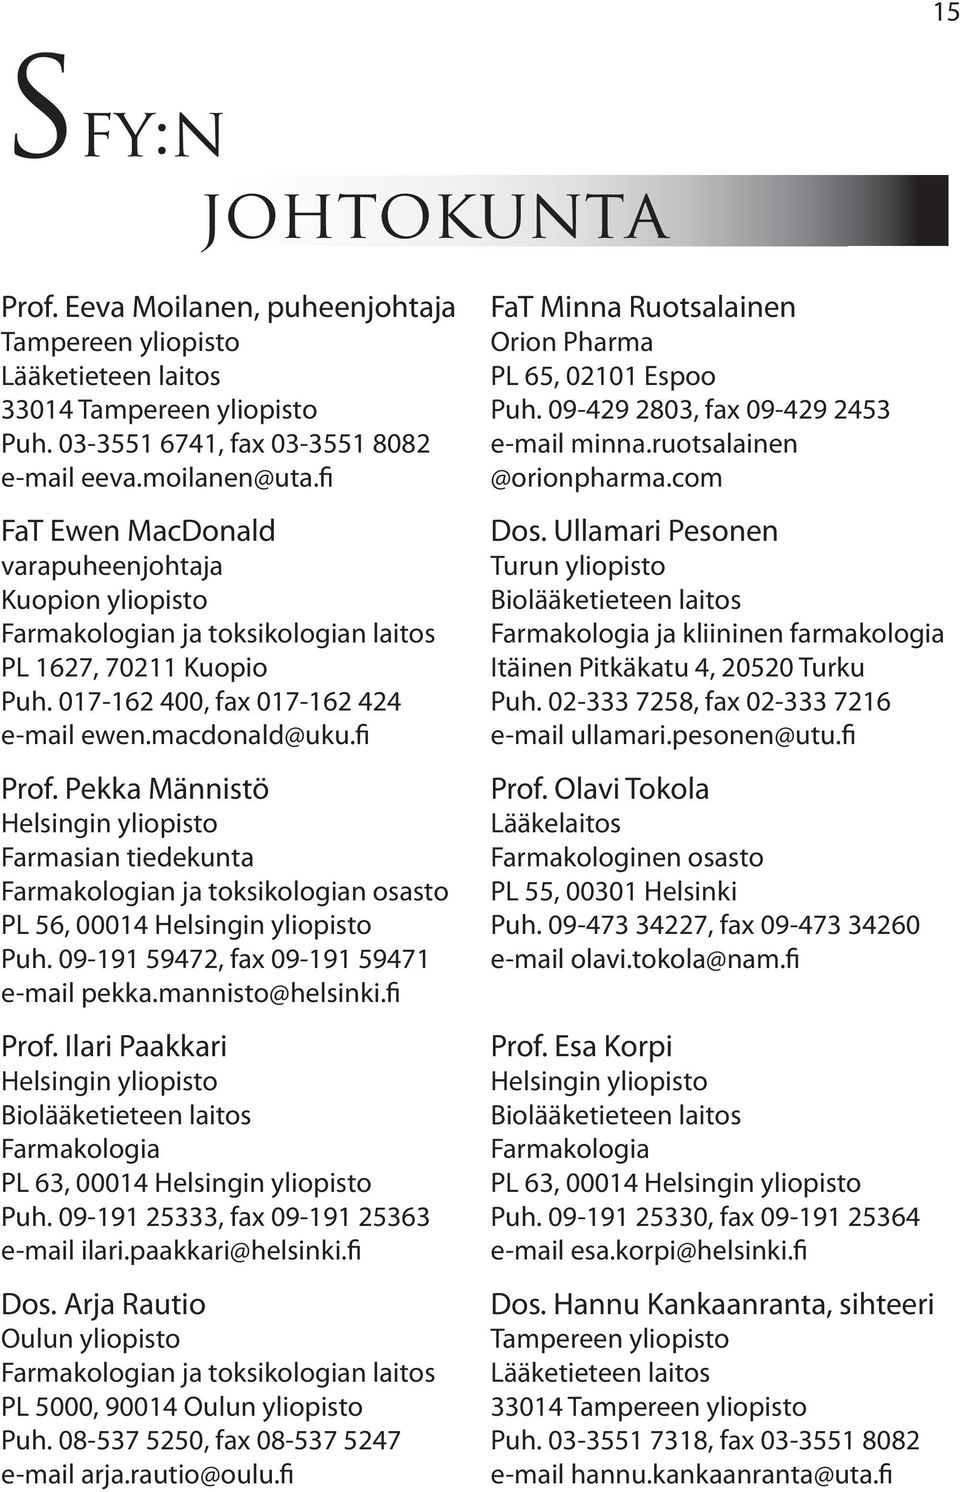 Pekka Männistö Helsingin yliopisto Farmasian tiedekunta Farmakologian ja toksikologian osasto PL 56, 00014 Helsingin yliopisto Puh. 09-191 59472, fax 09-191 59471 e-mail pekka.mannisto@helsinki.